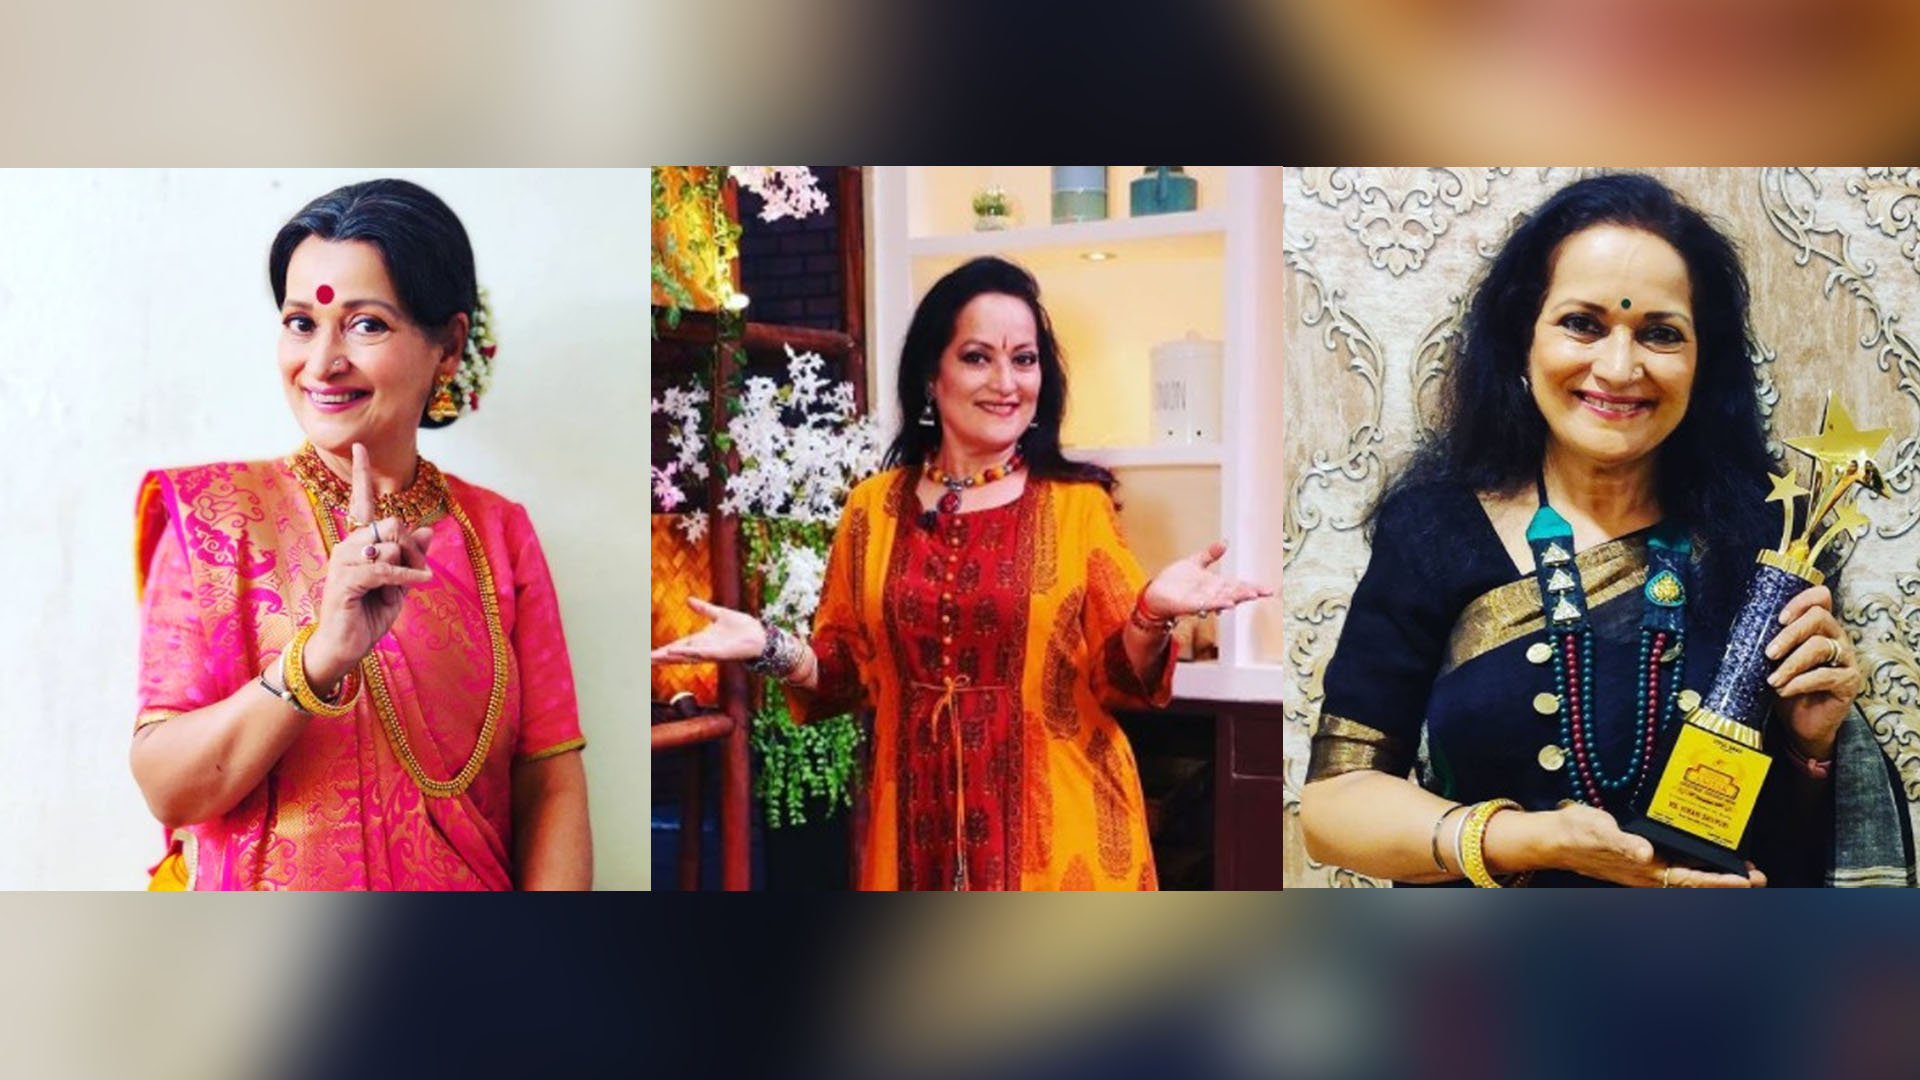 Happu Ki Ultan Paltan’s Himani Shivpuri rounds up her bittersweet memories of 2020